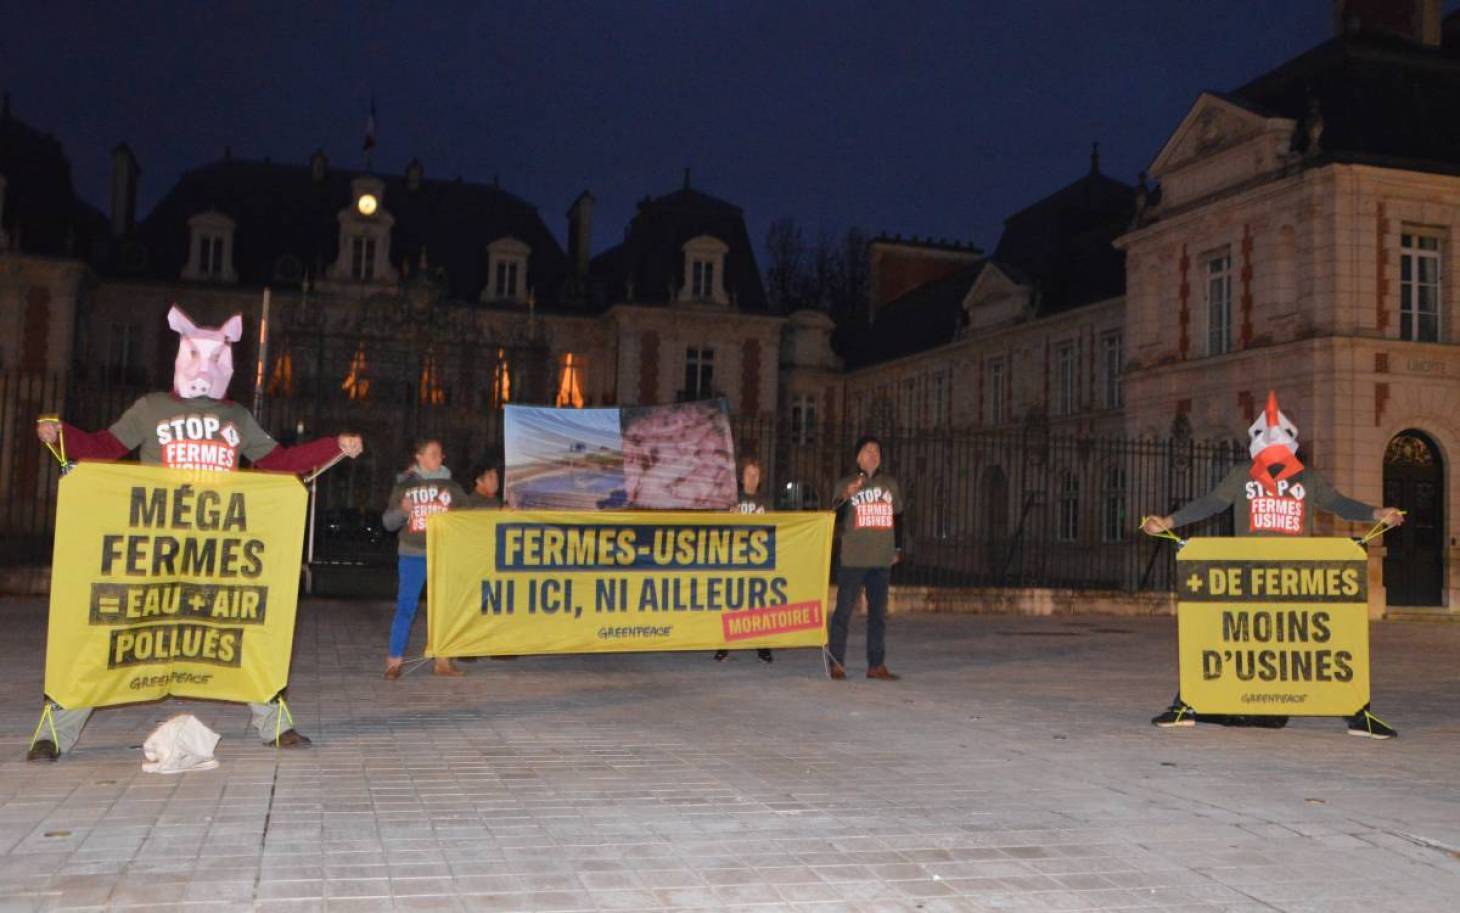 Greenpeace dénonce les fermes-usines, en simultané à Poitiers et ailleurs